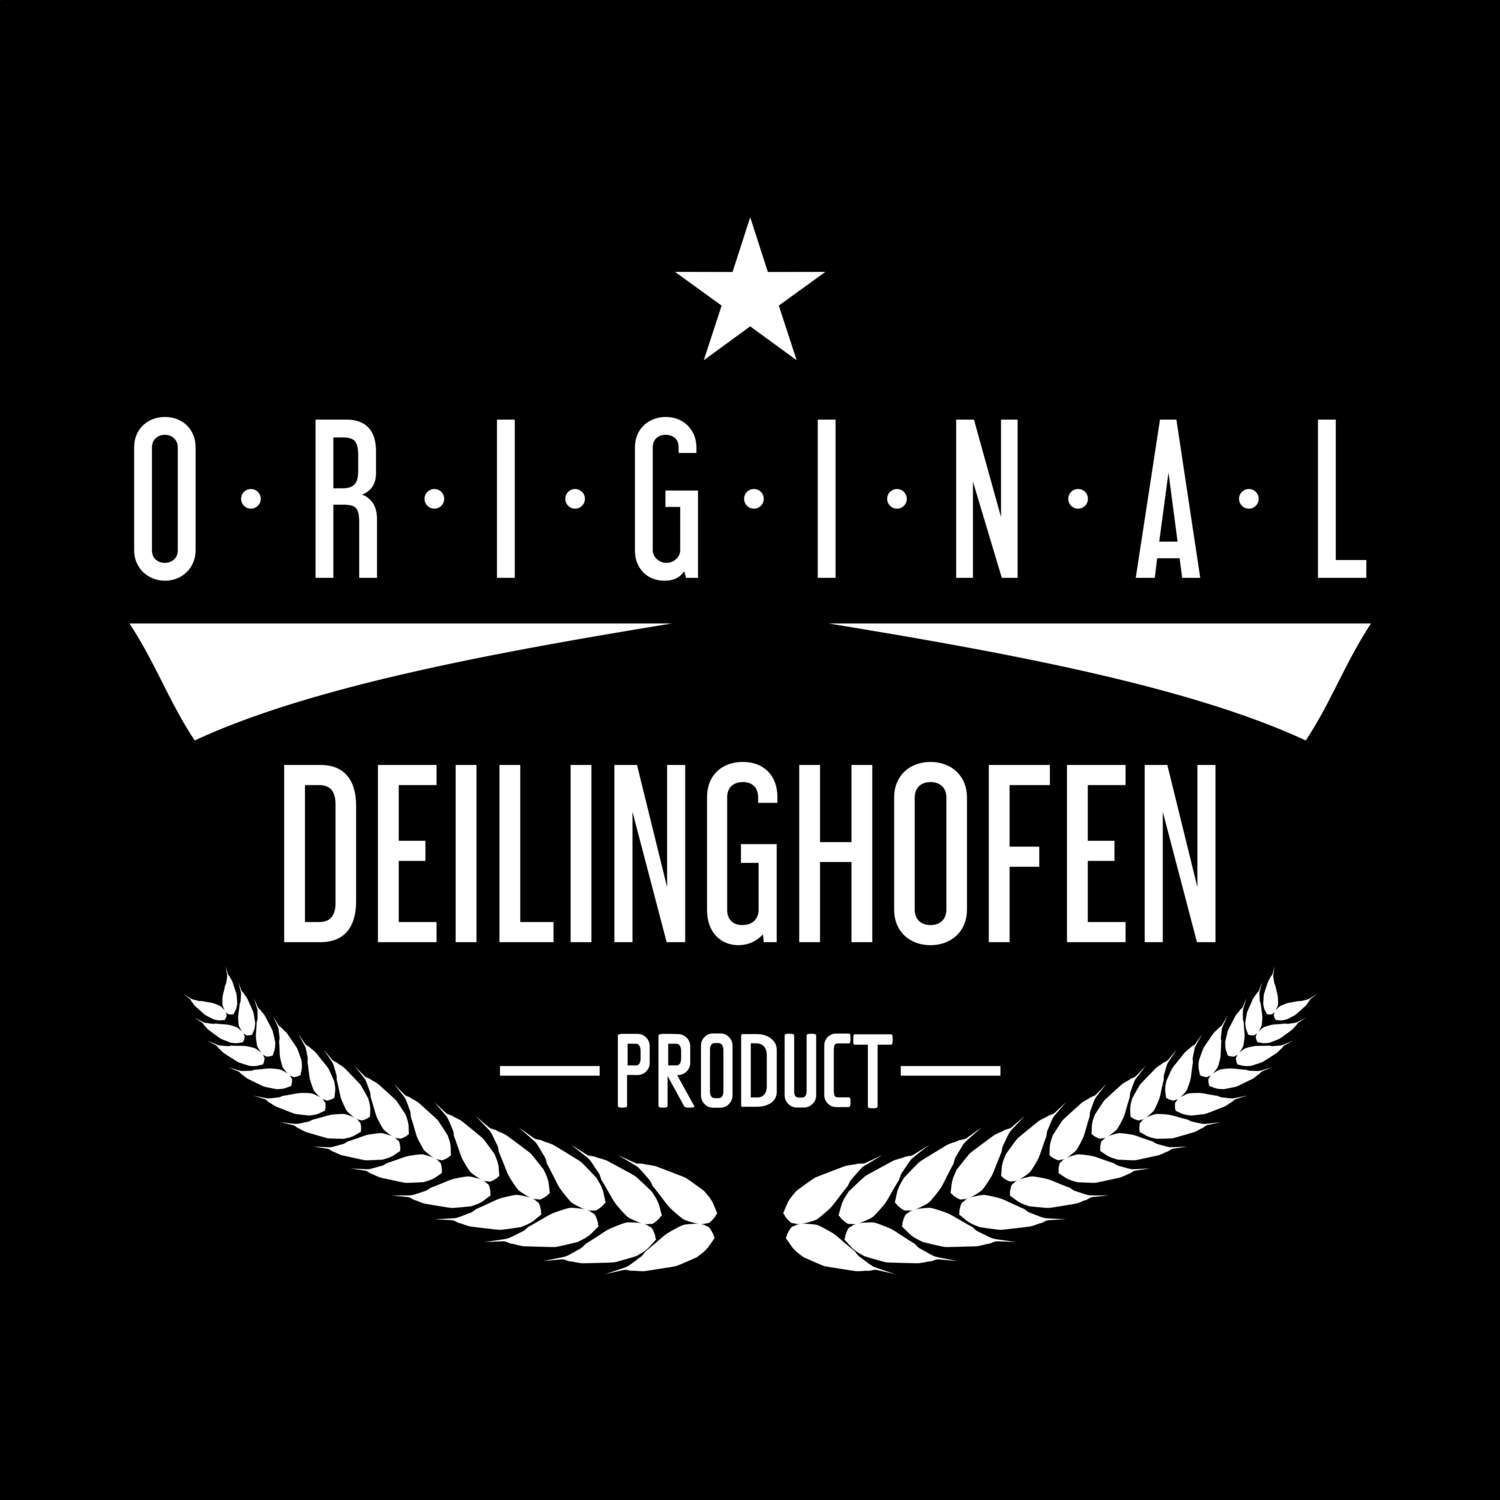 Deilinghofen T-Shirt »Original Product«